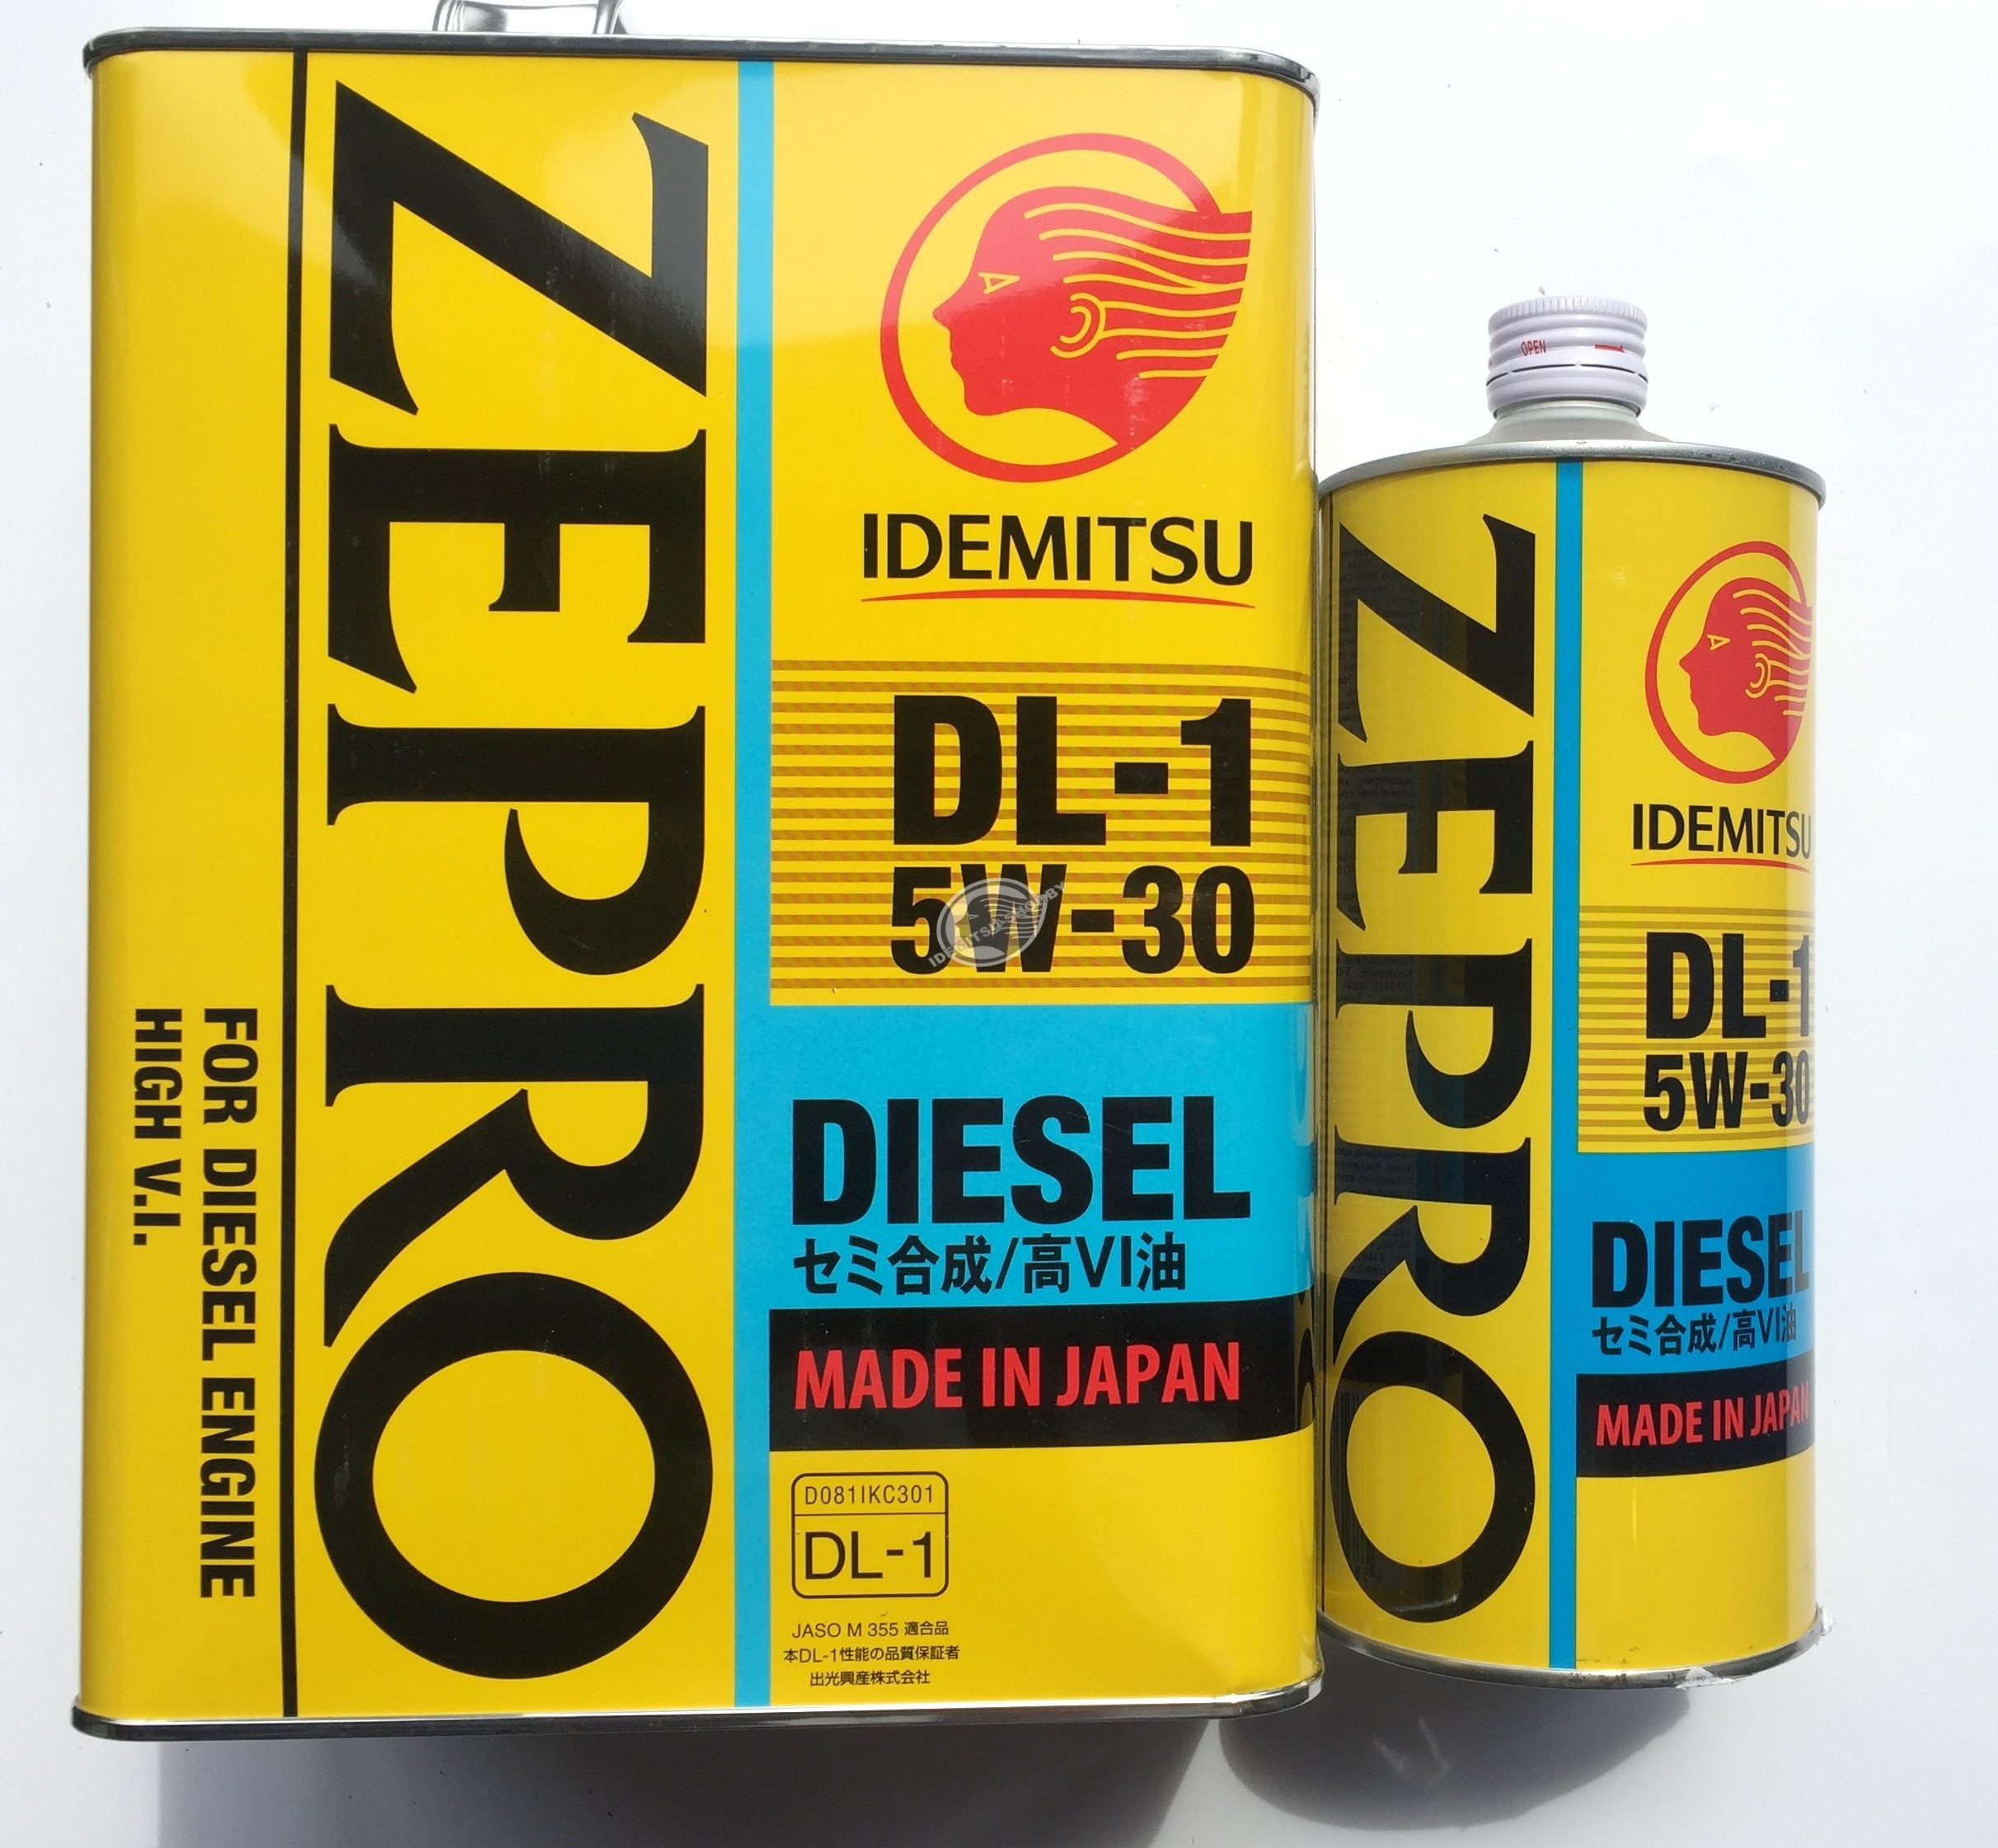 5w30 Idemitsu Zepro Diesel DL-1 2156-001.